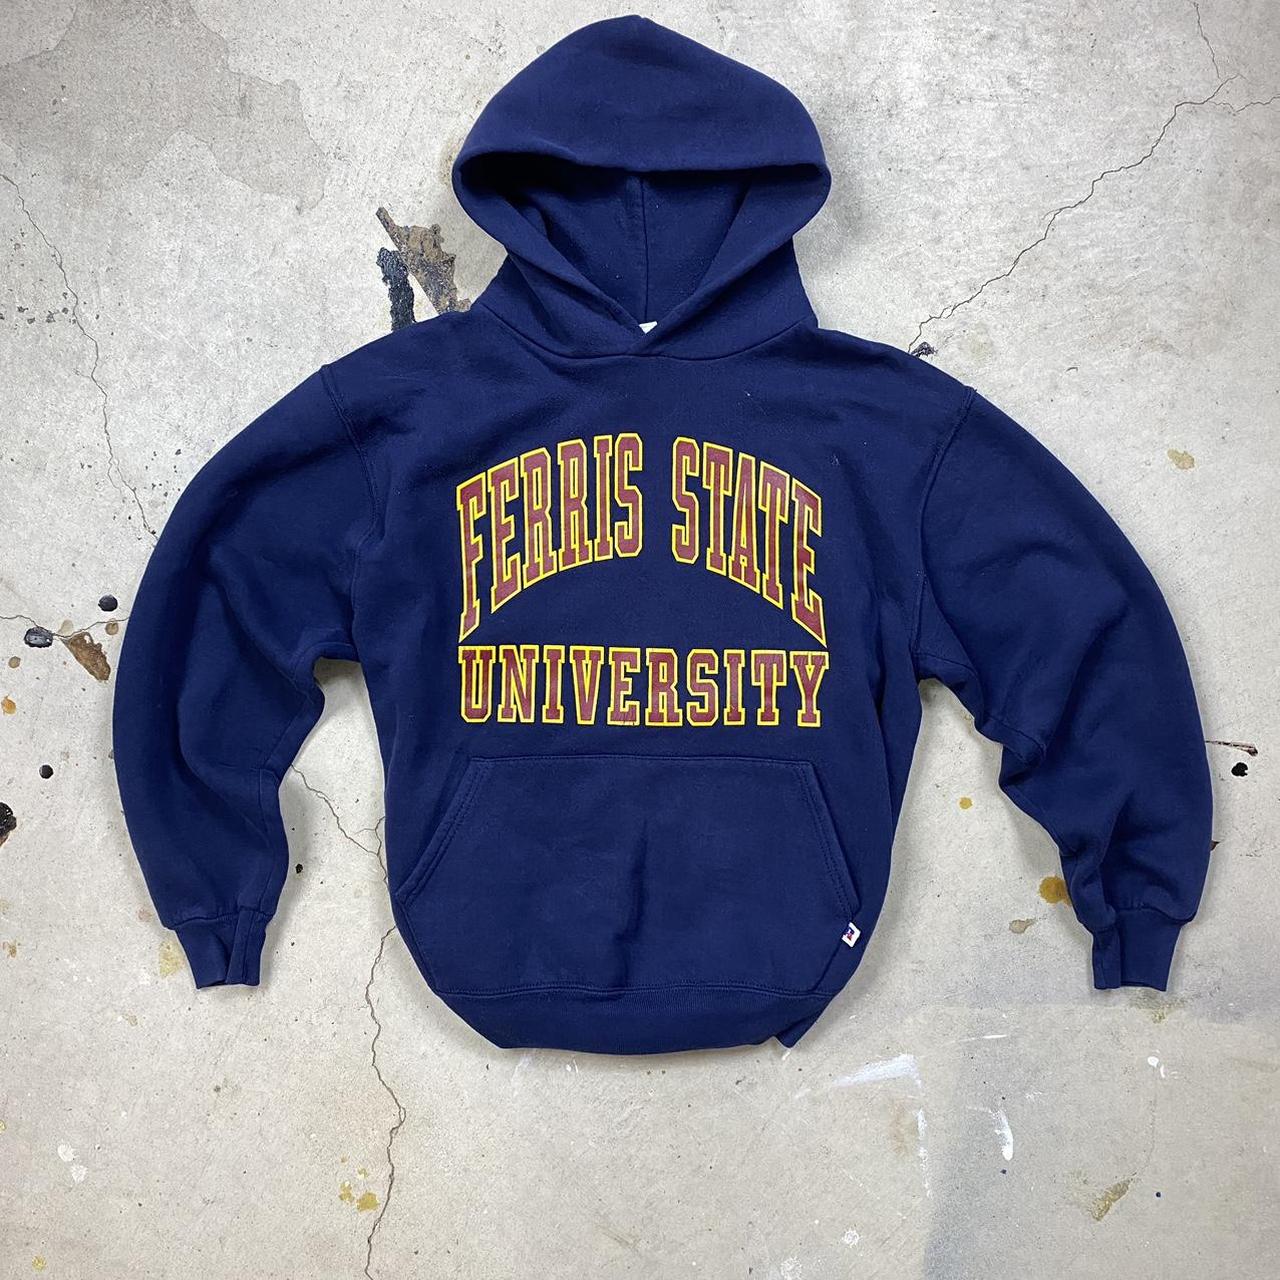 Ferris State University Navy Russell Hoodie Made in... - Depop